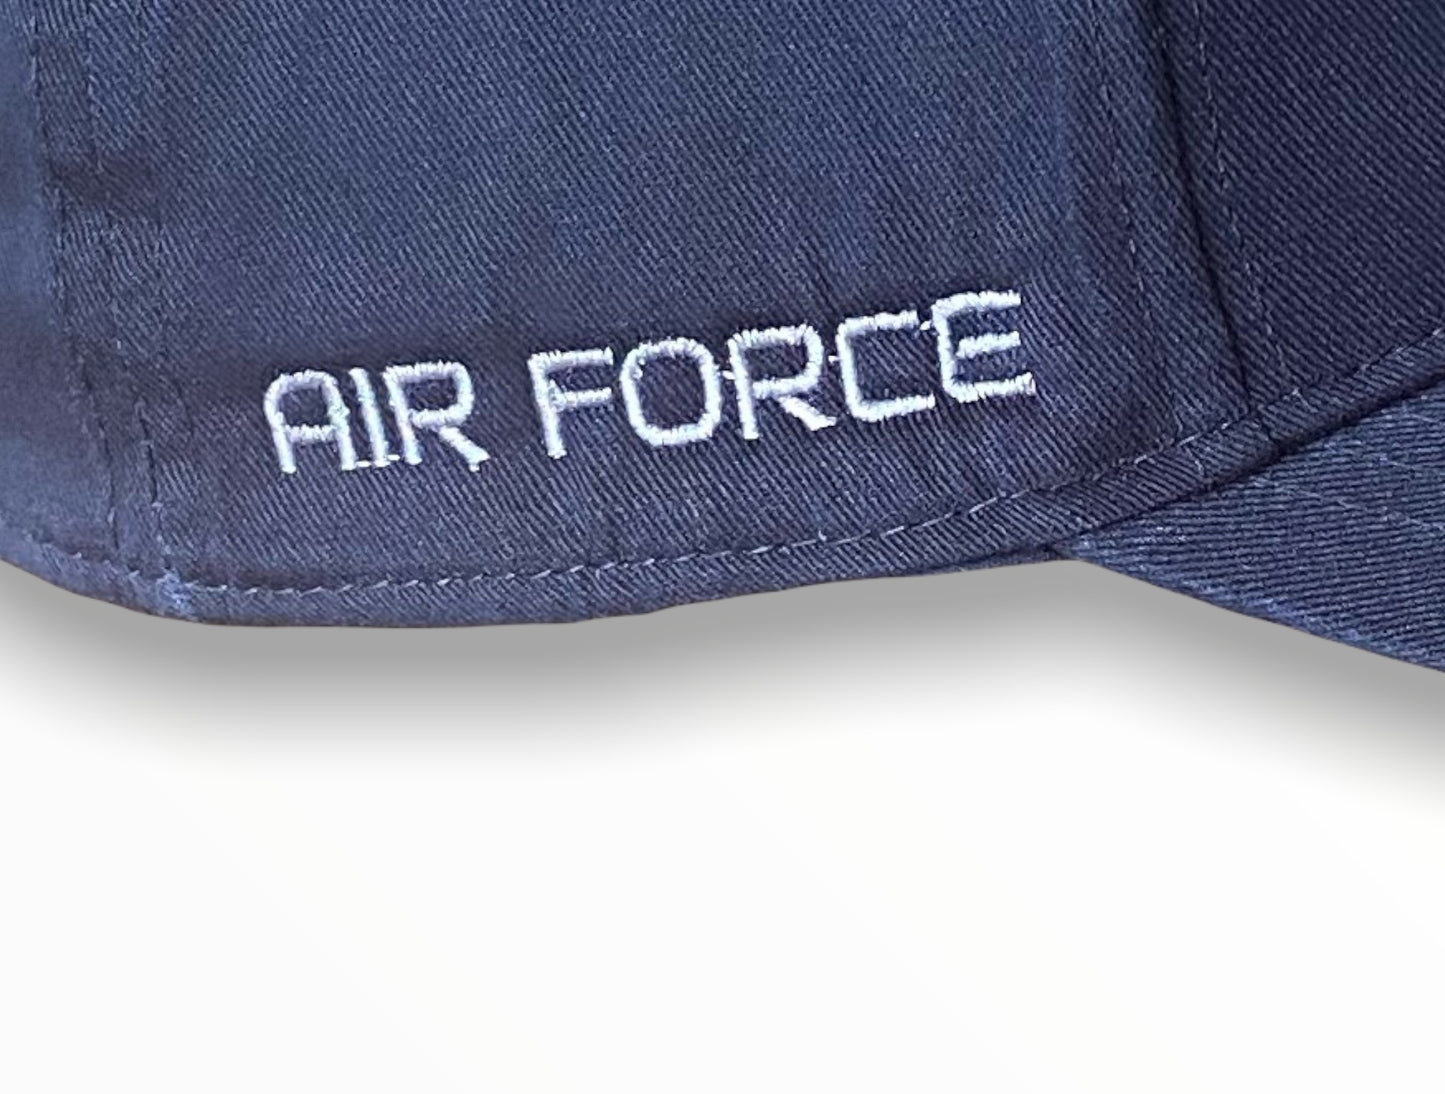 Air Force W♡man Veteran